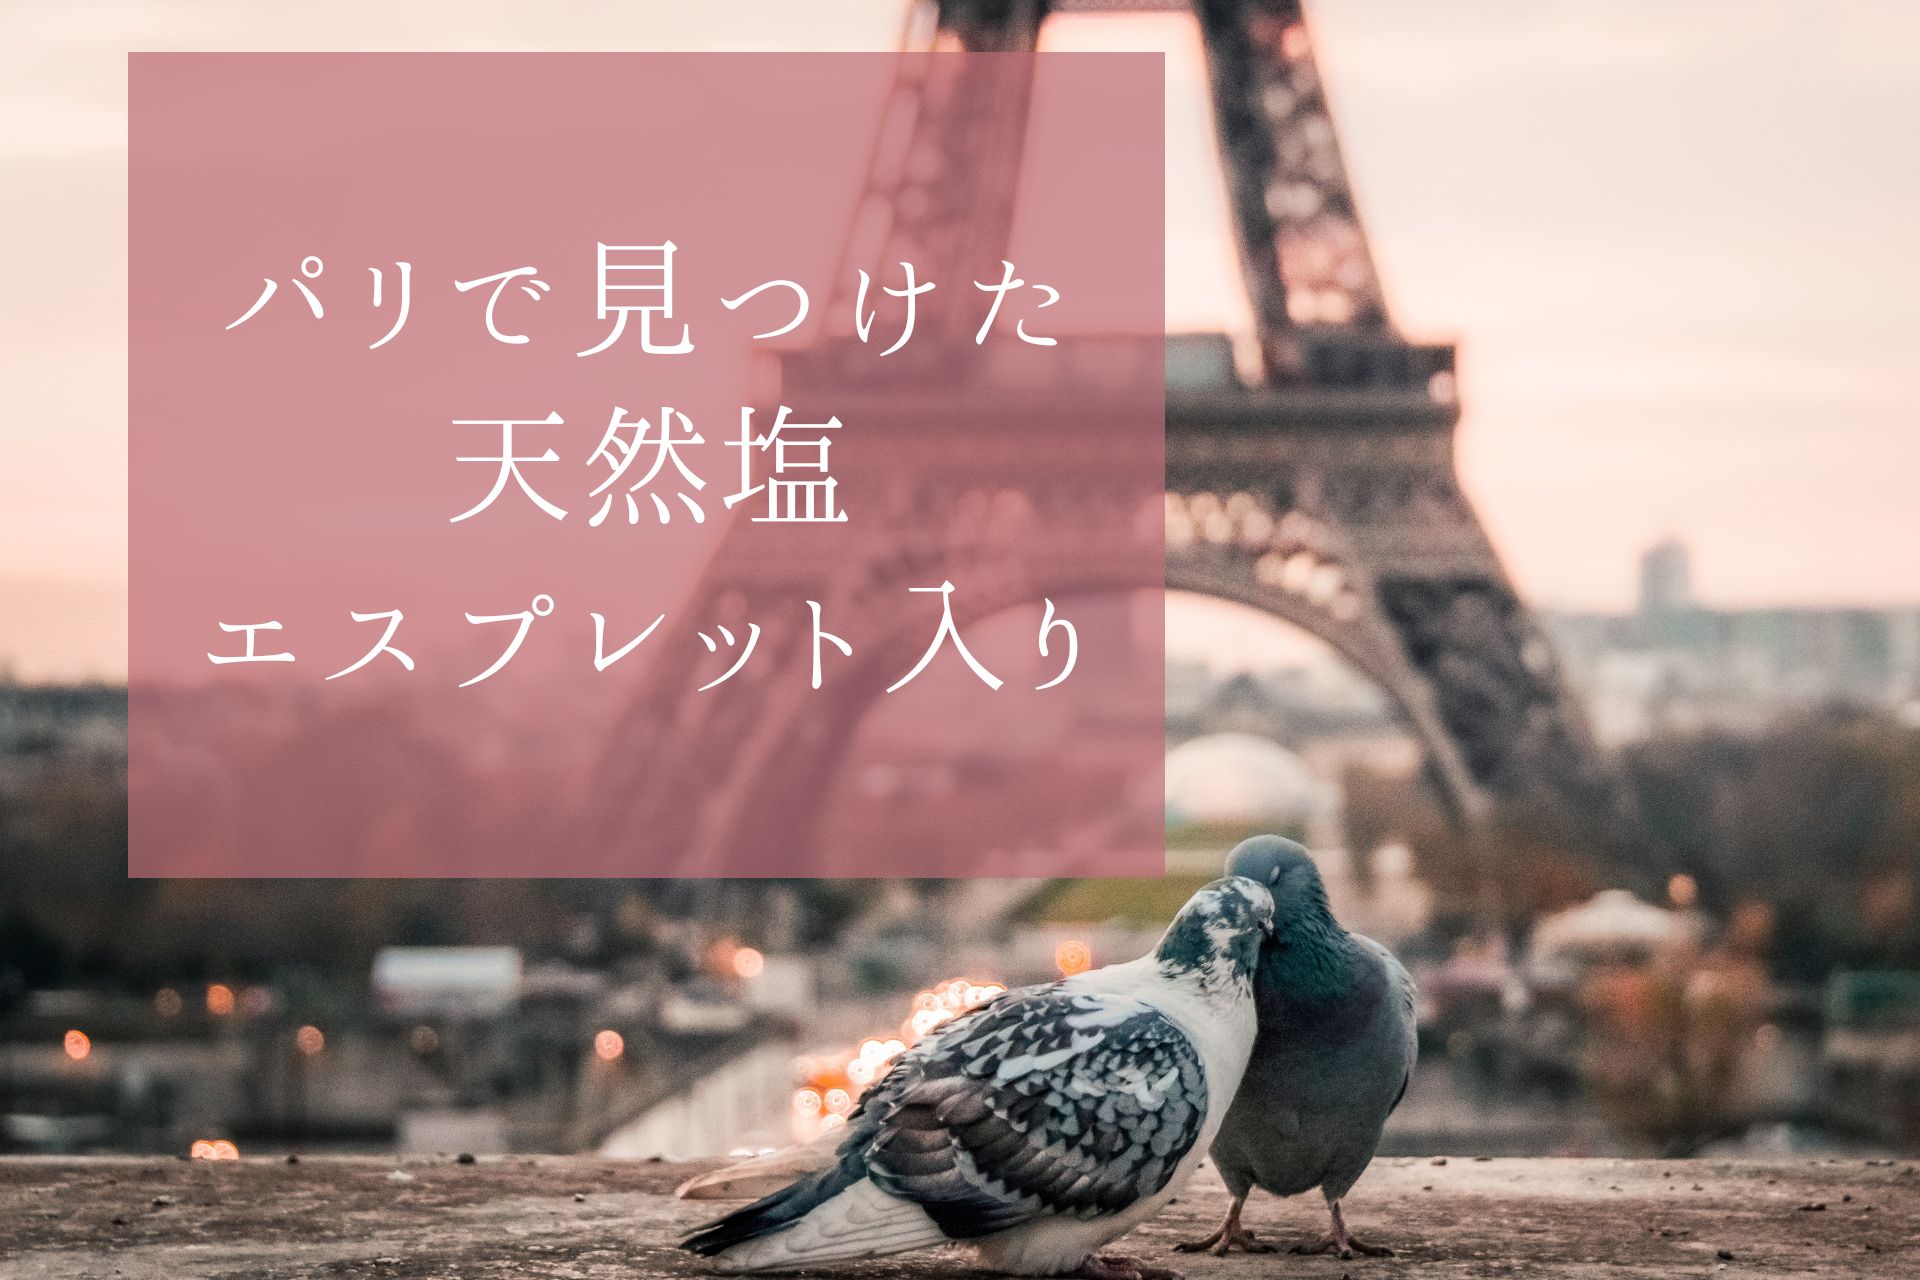 【フルールドセル】フランス・パリのMonoprixでやっと再会できた日本では買えないエスプレット唐辛子入りフルールドセル。